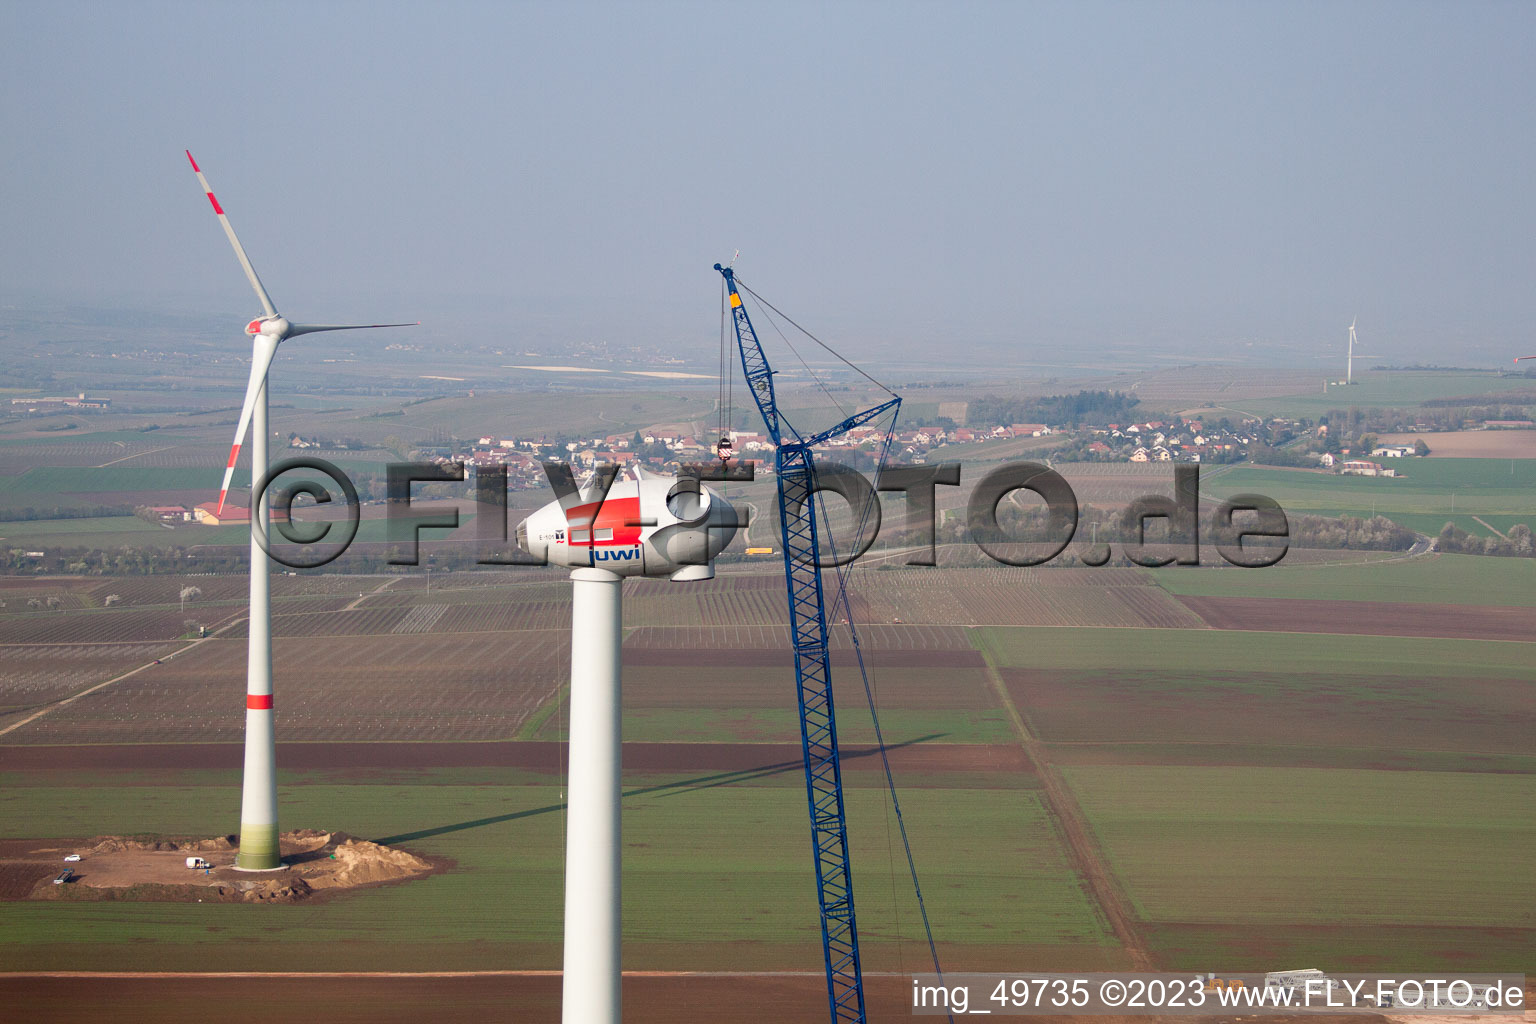 Chantier de construction d'éoliennes à Gabsheim dans le département Rhénanie-Palatinat, Allemagne vue d'en haut